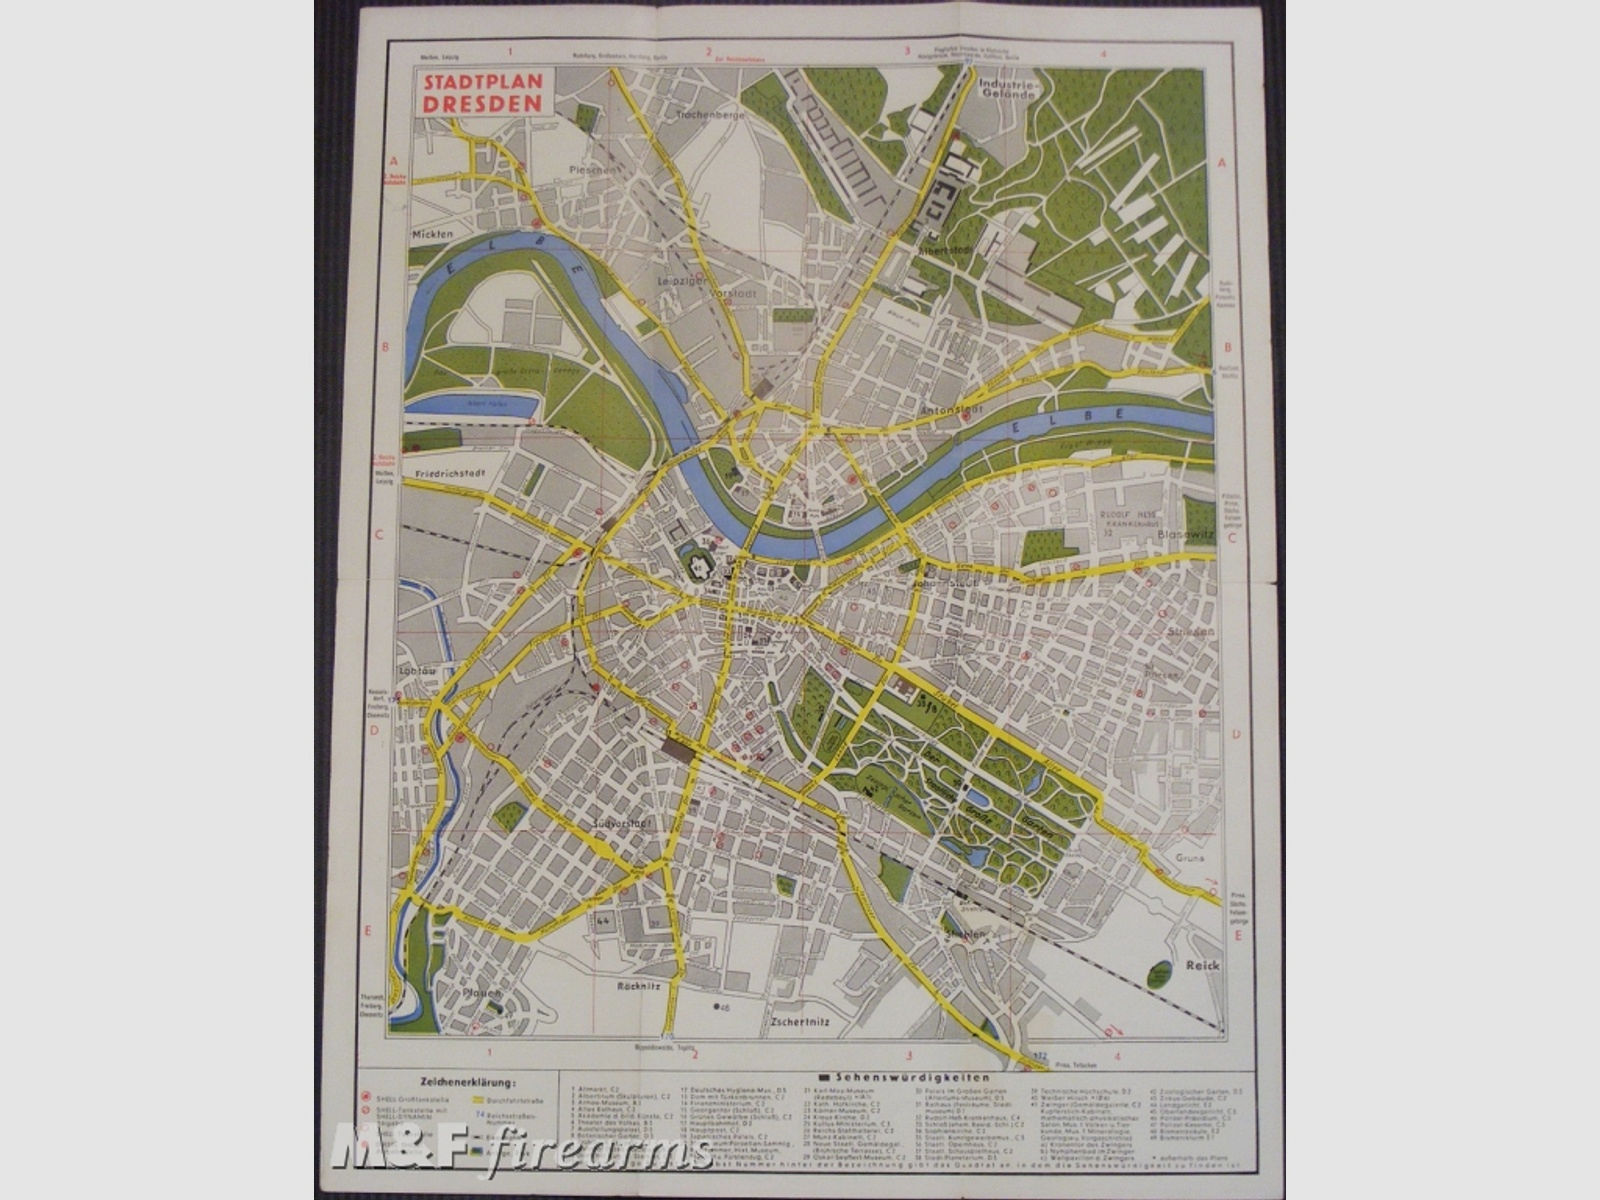 Shell Stadtkarte Nr. 07 Dresden